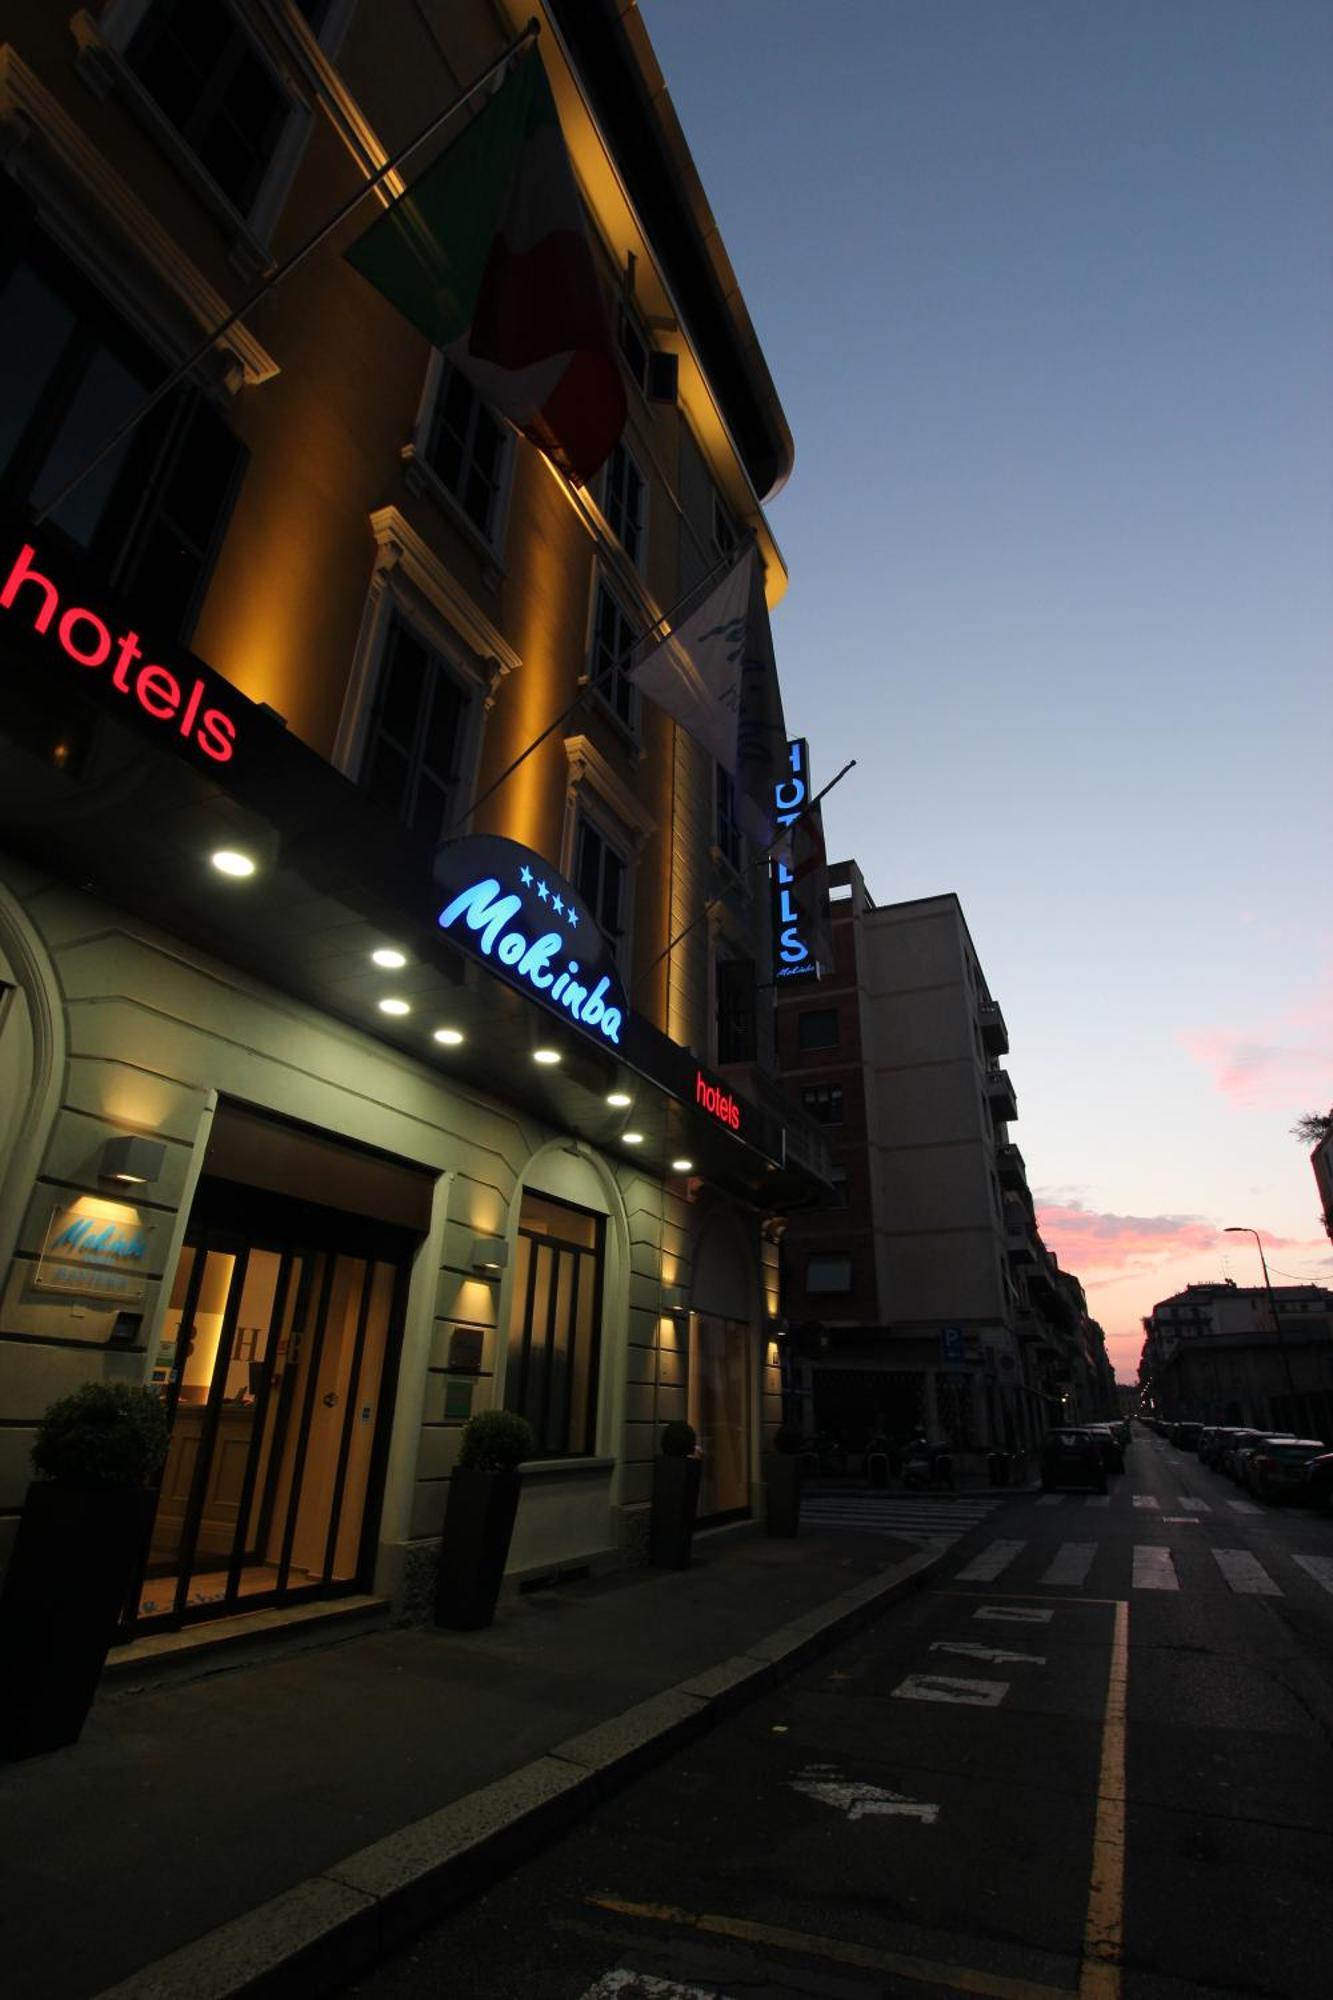 Mokinba Hotels Baviera Milánó Kültér fotó